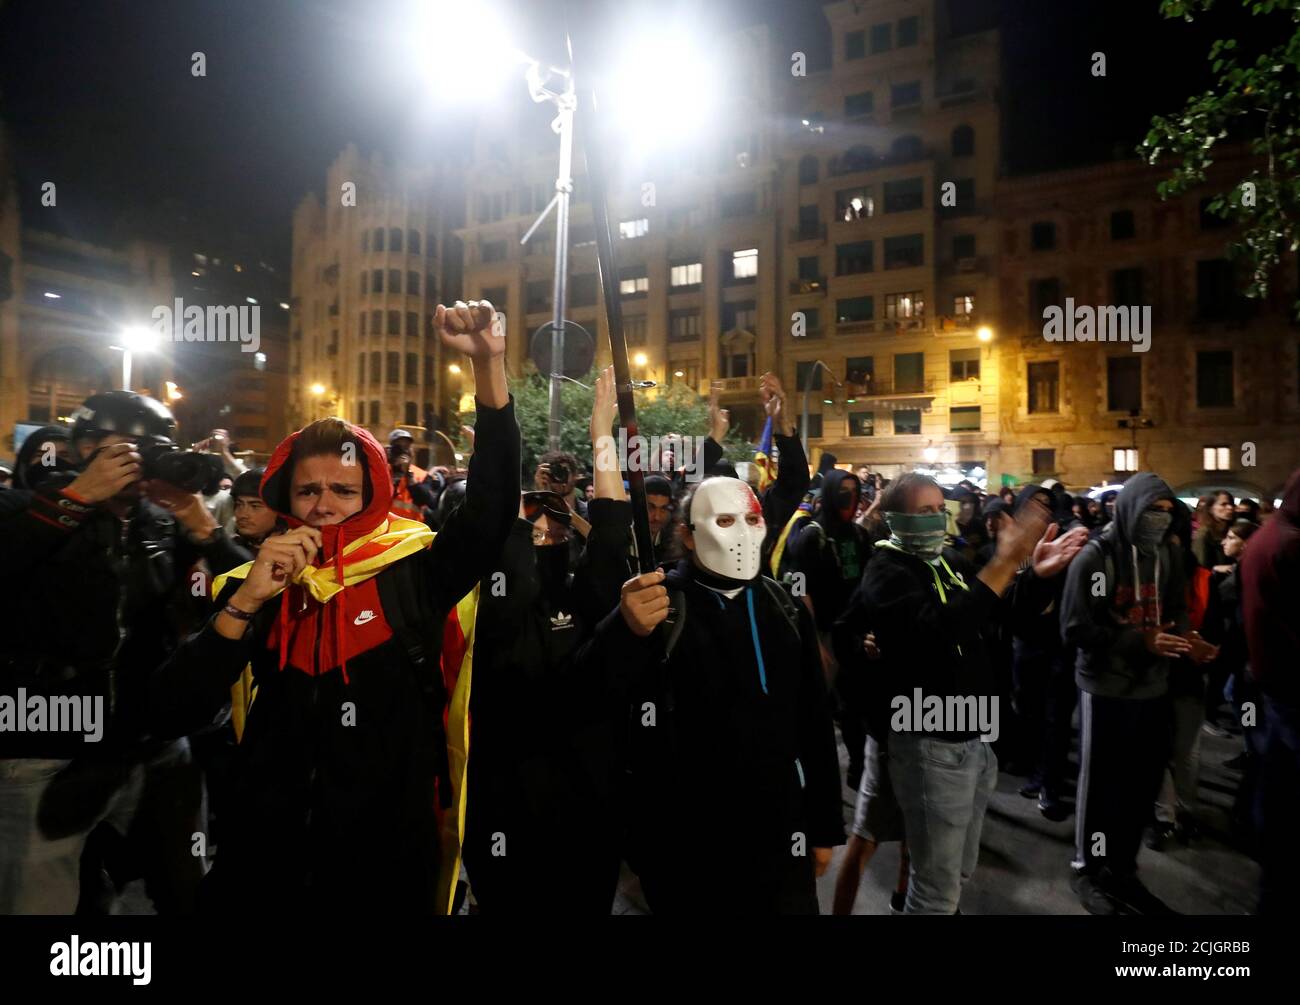 Katalanische Demonstranten, die sich für die Unabhängigkeit einsetzen, rufen bei einem Protest gegen Polizeiaktionen vor dem Hauptquartier der Nationalen Polizei in Barcelona, Spanien, am 26. Oktober 2019 Parolen. REUTERS/Sergio Perez Stockfoto